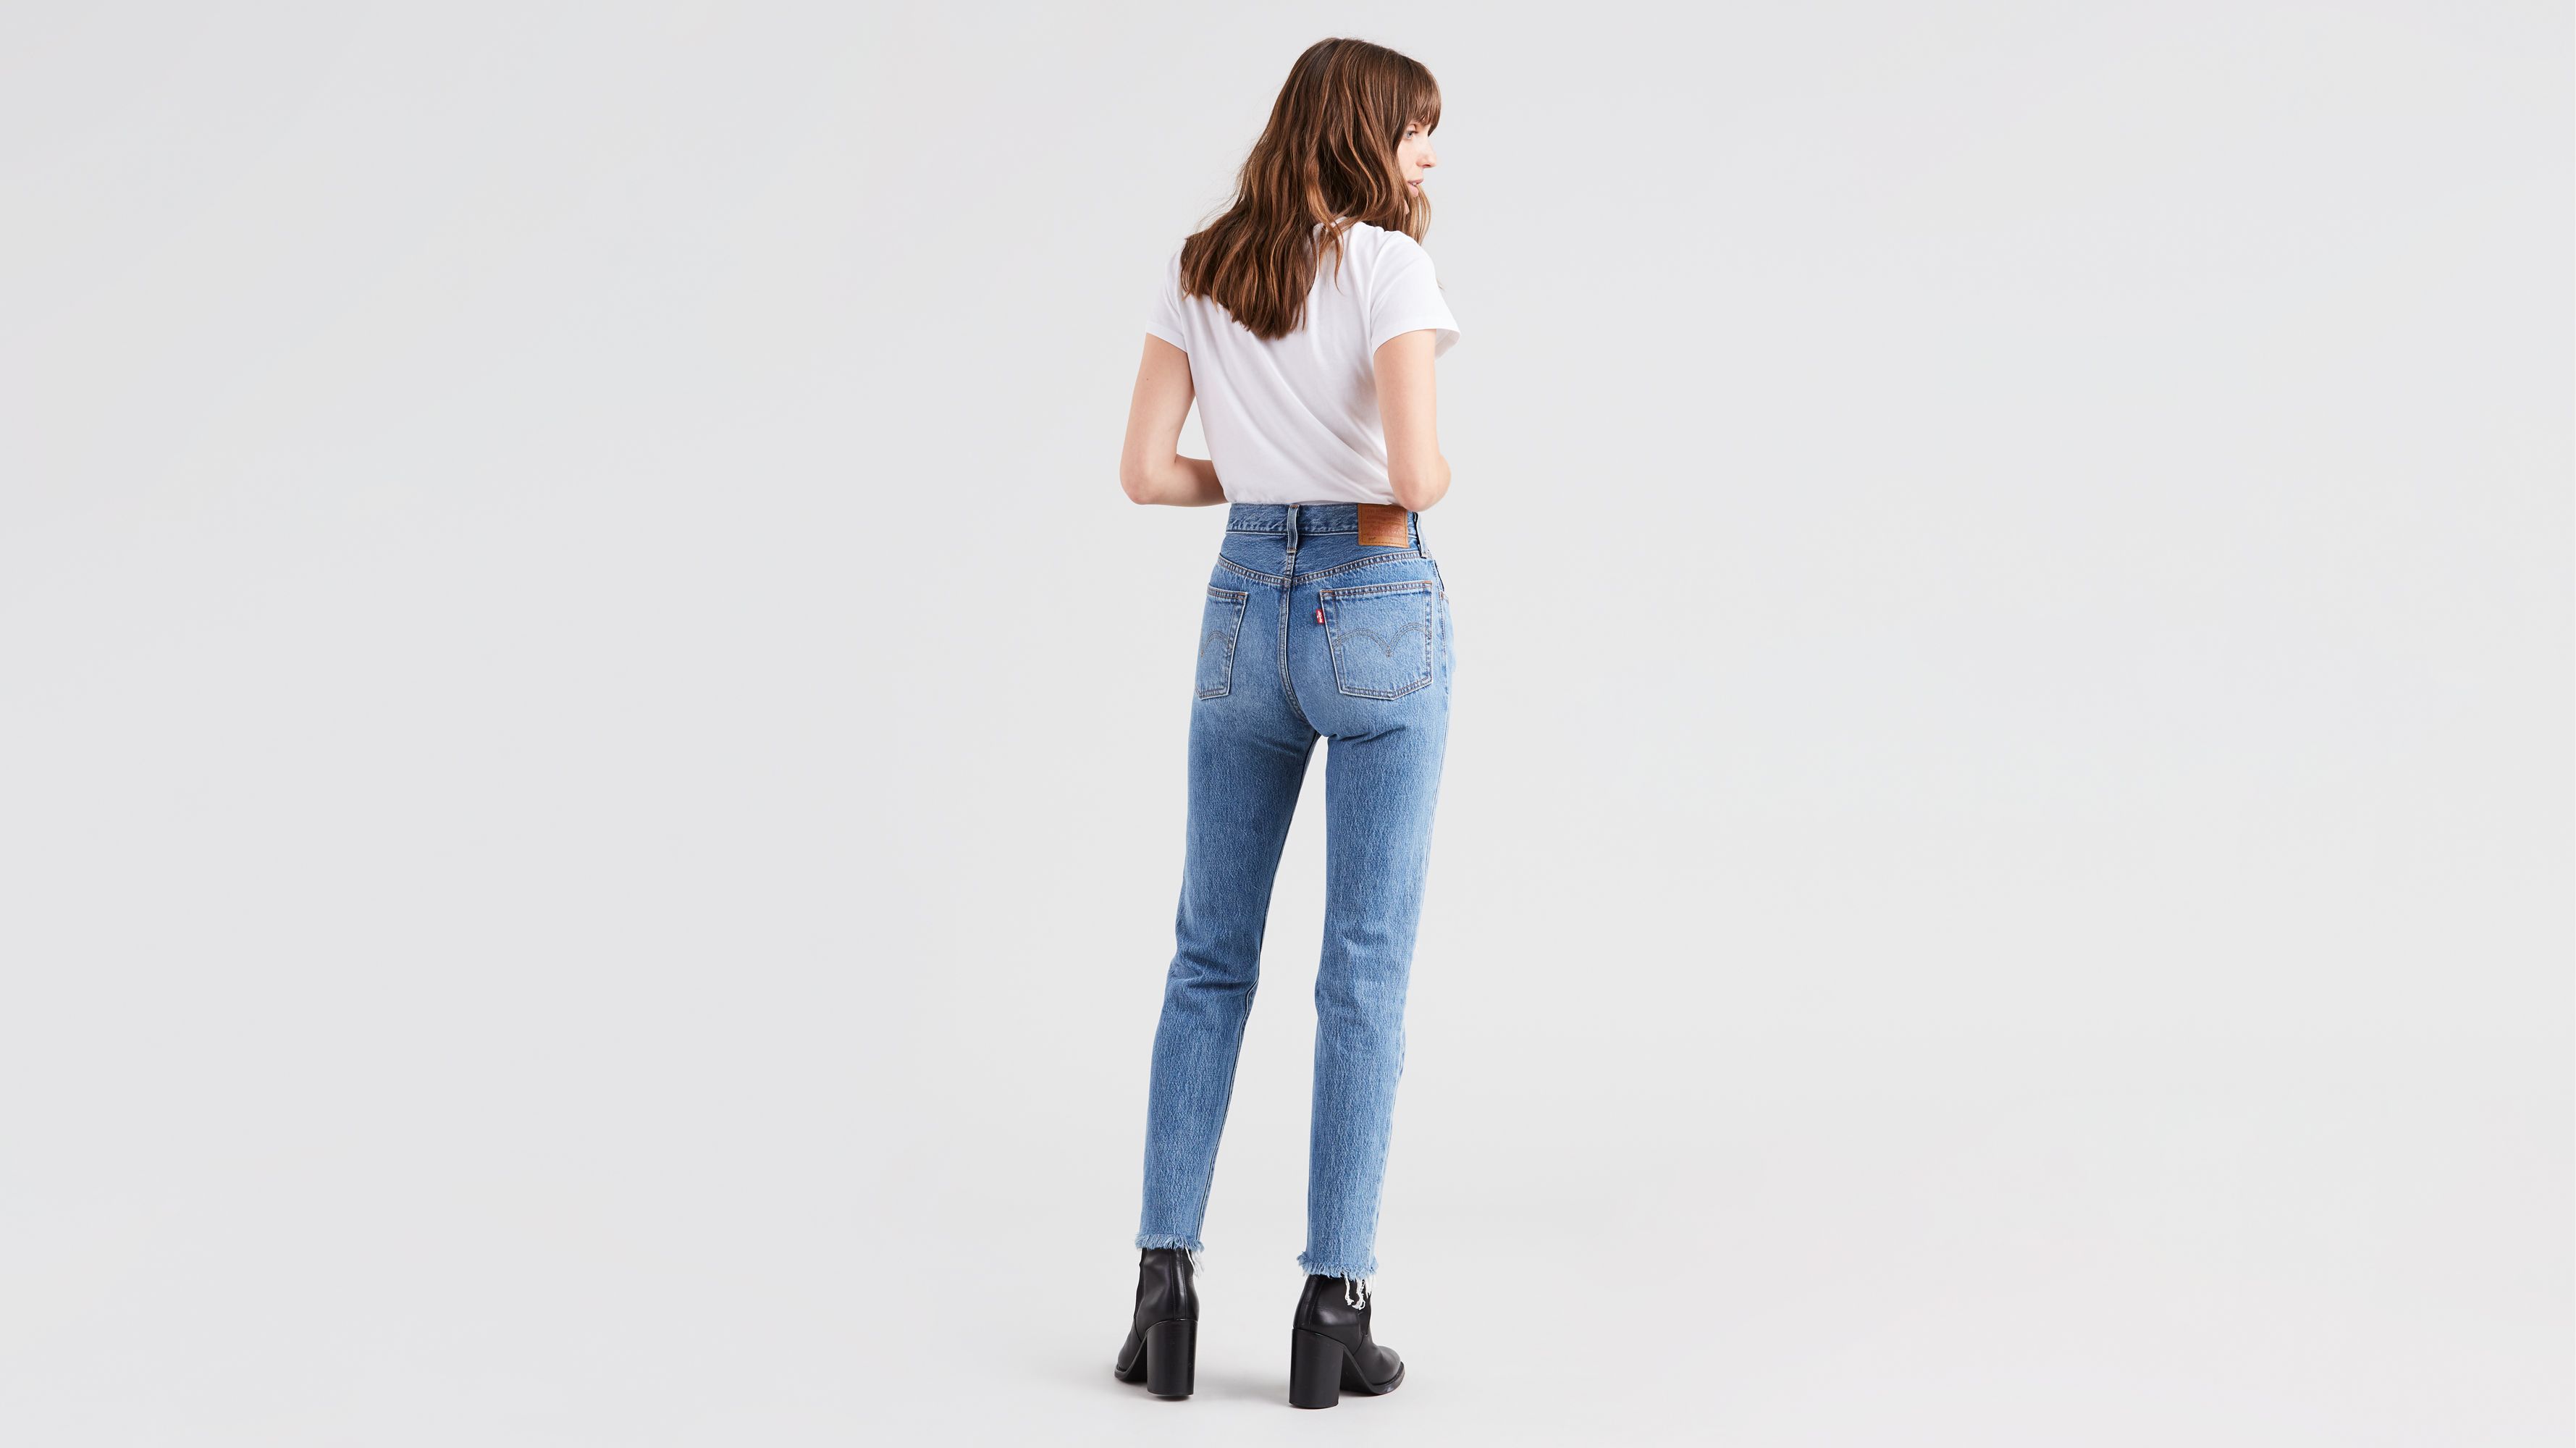 501 original selvedge jeans womens